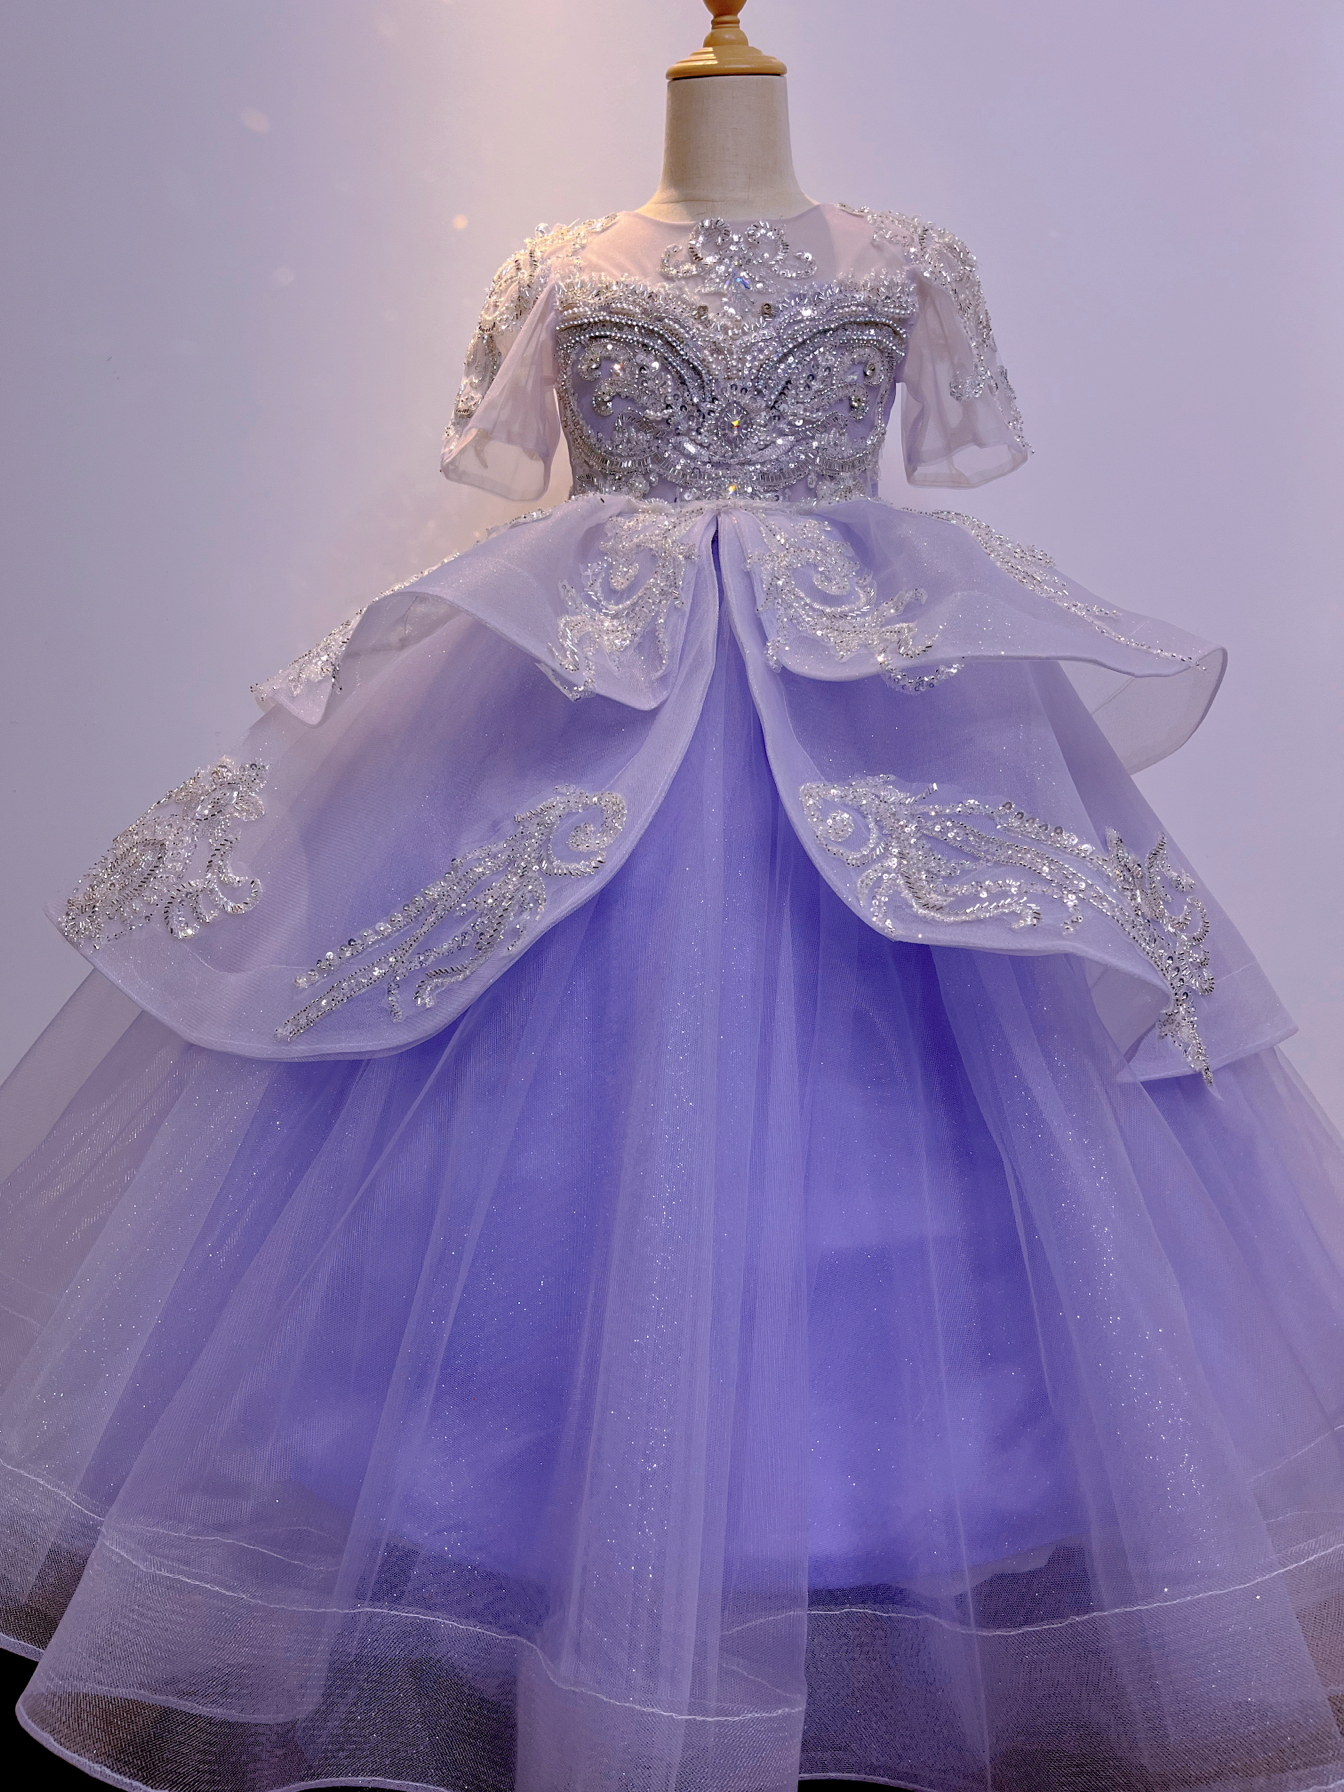 出租紫色齐地儿童礼服公主蓬蓬裙模特走秀唱歌主持钢琴演出生日